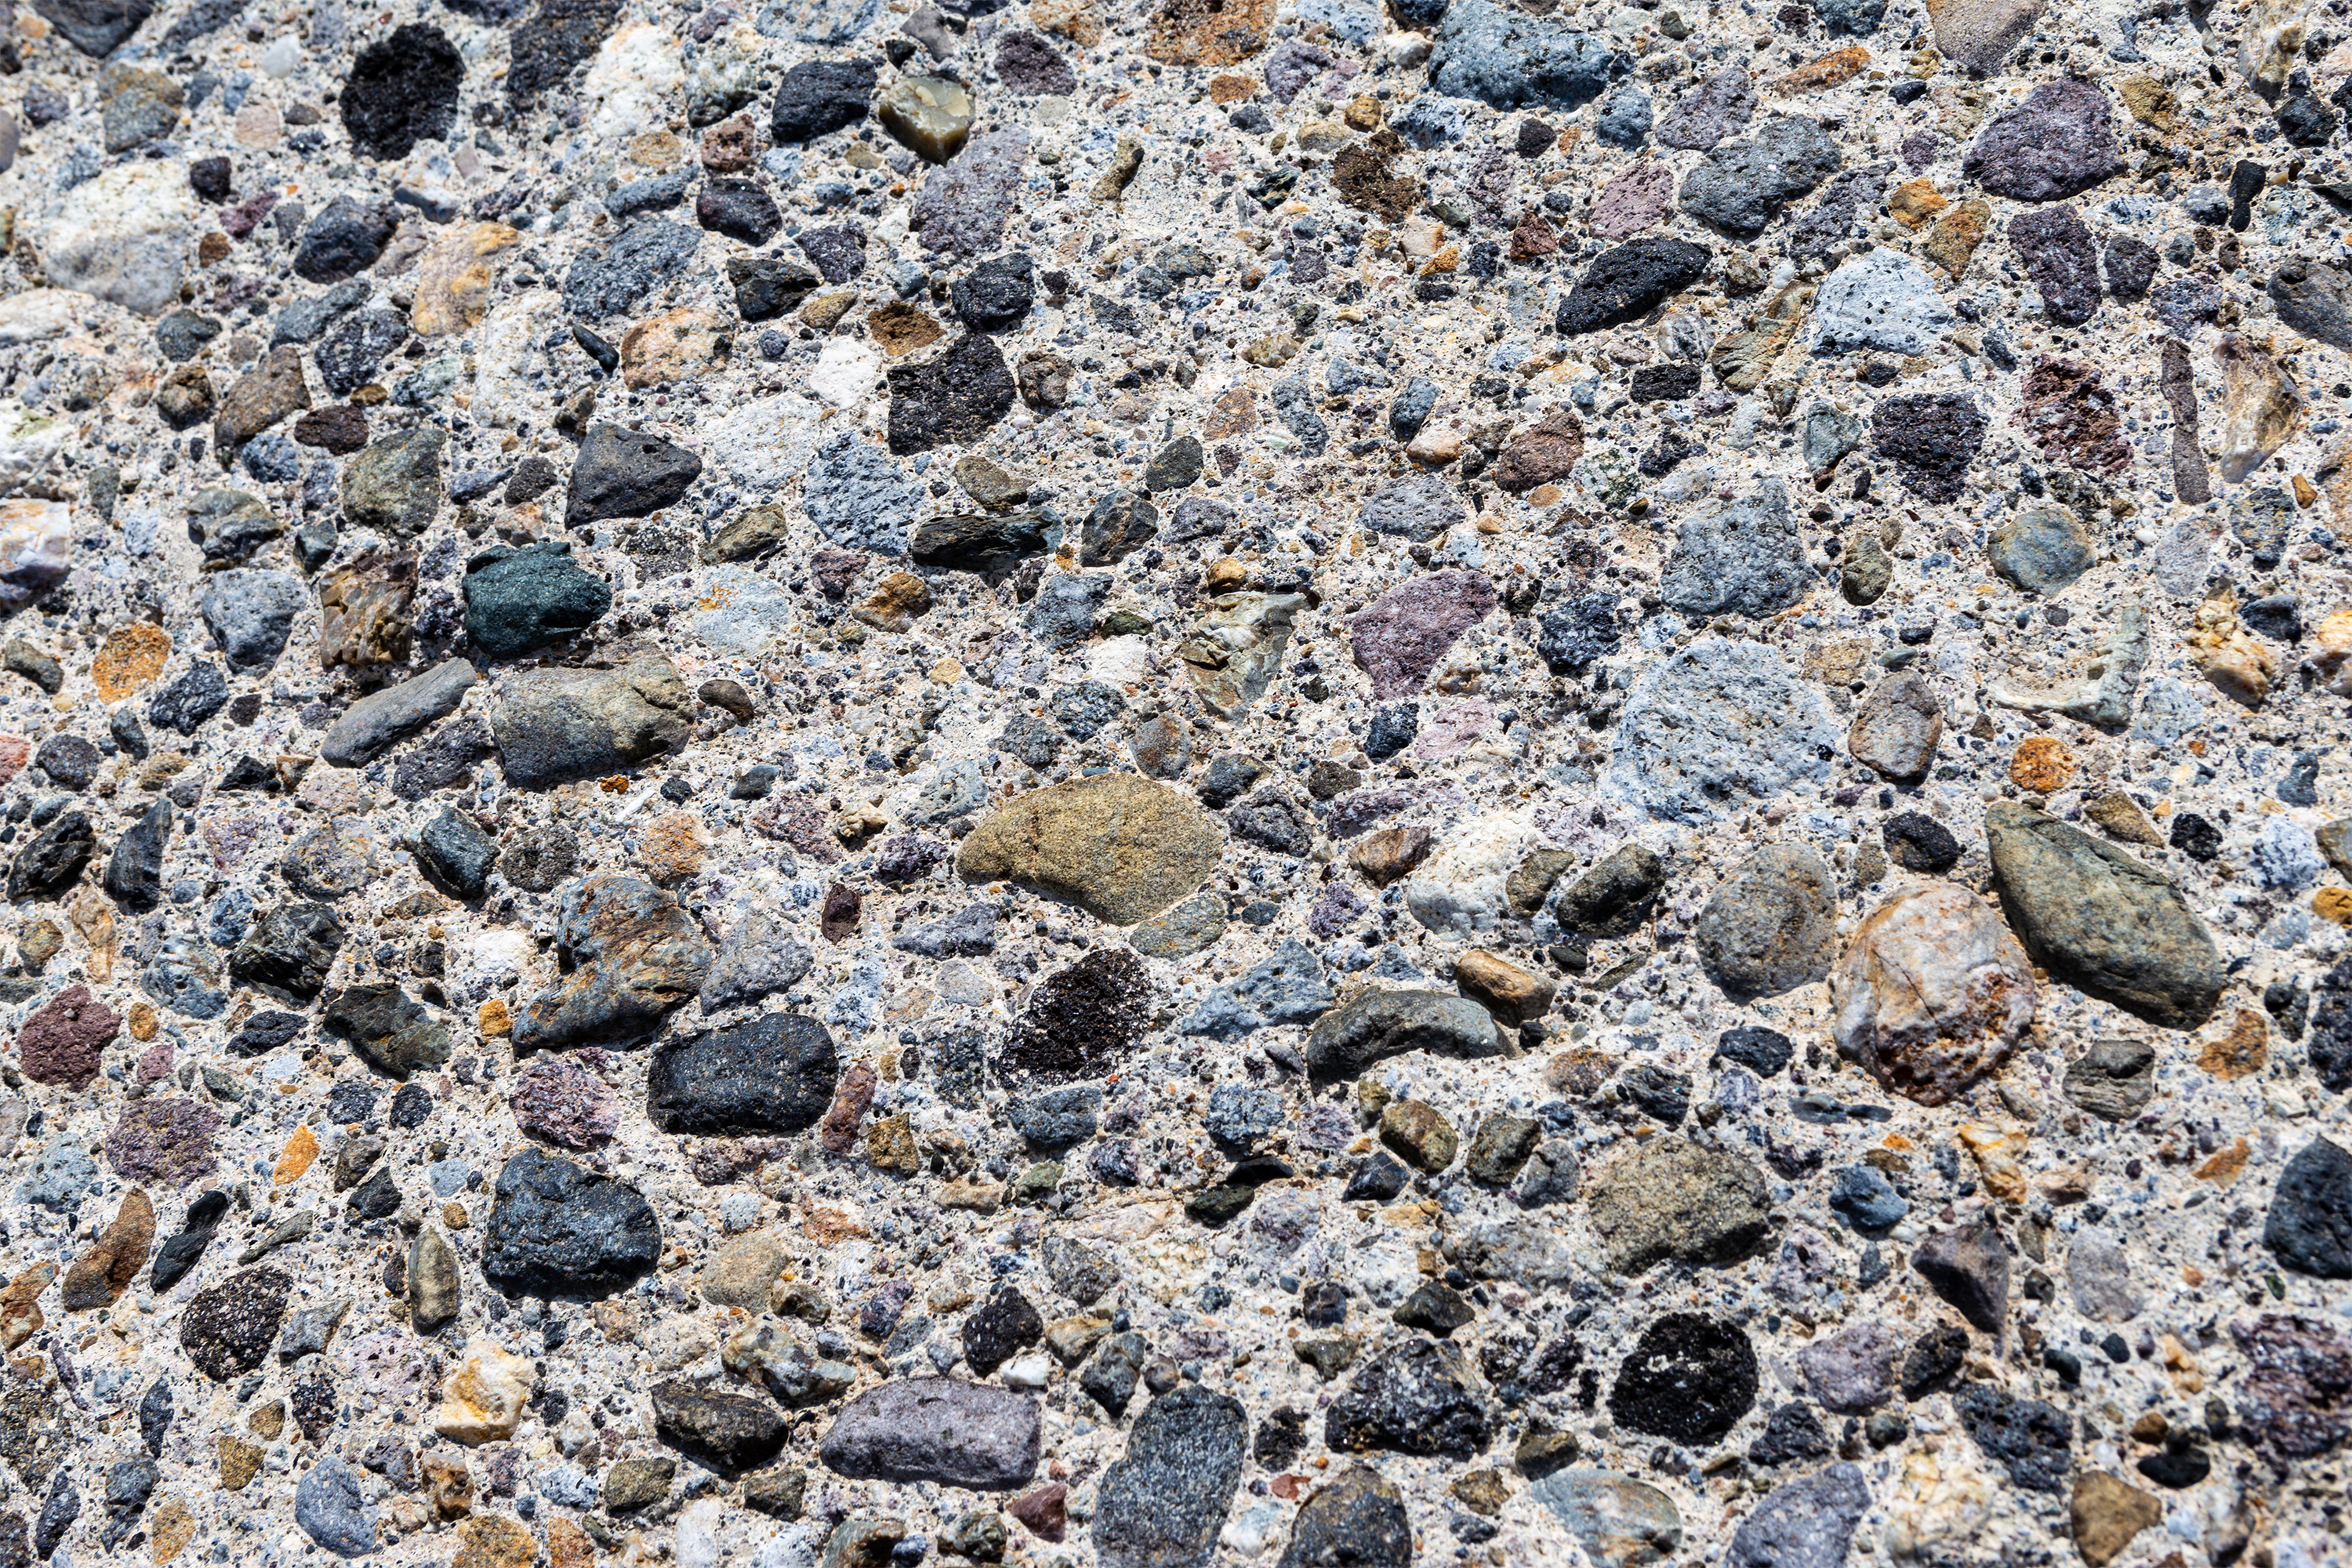 石 ストーン のテクスチャー05 無料の高画質フリー写真素材 イメージズラボ